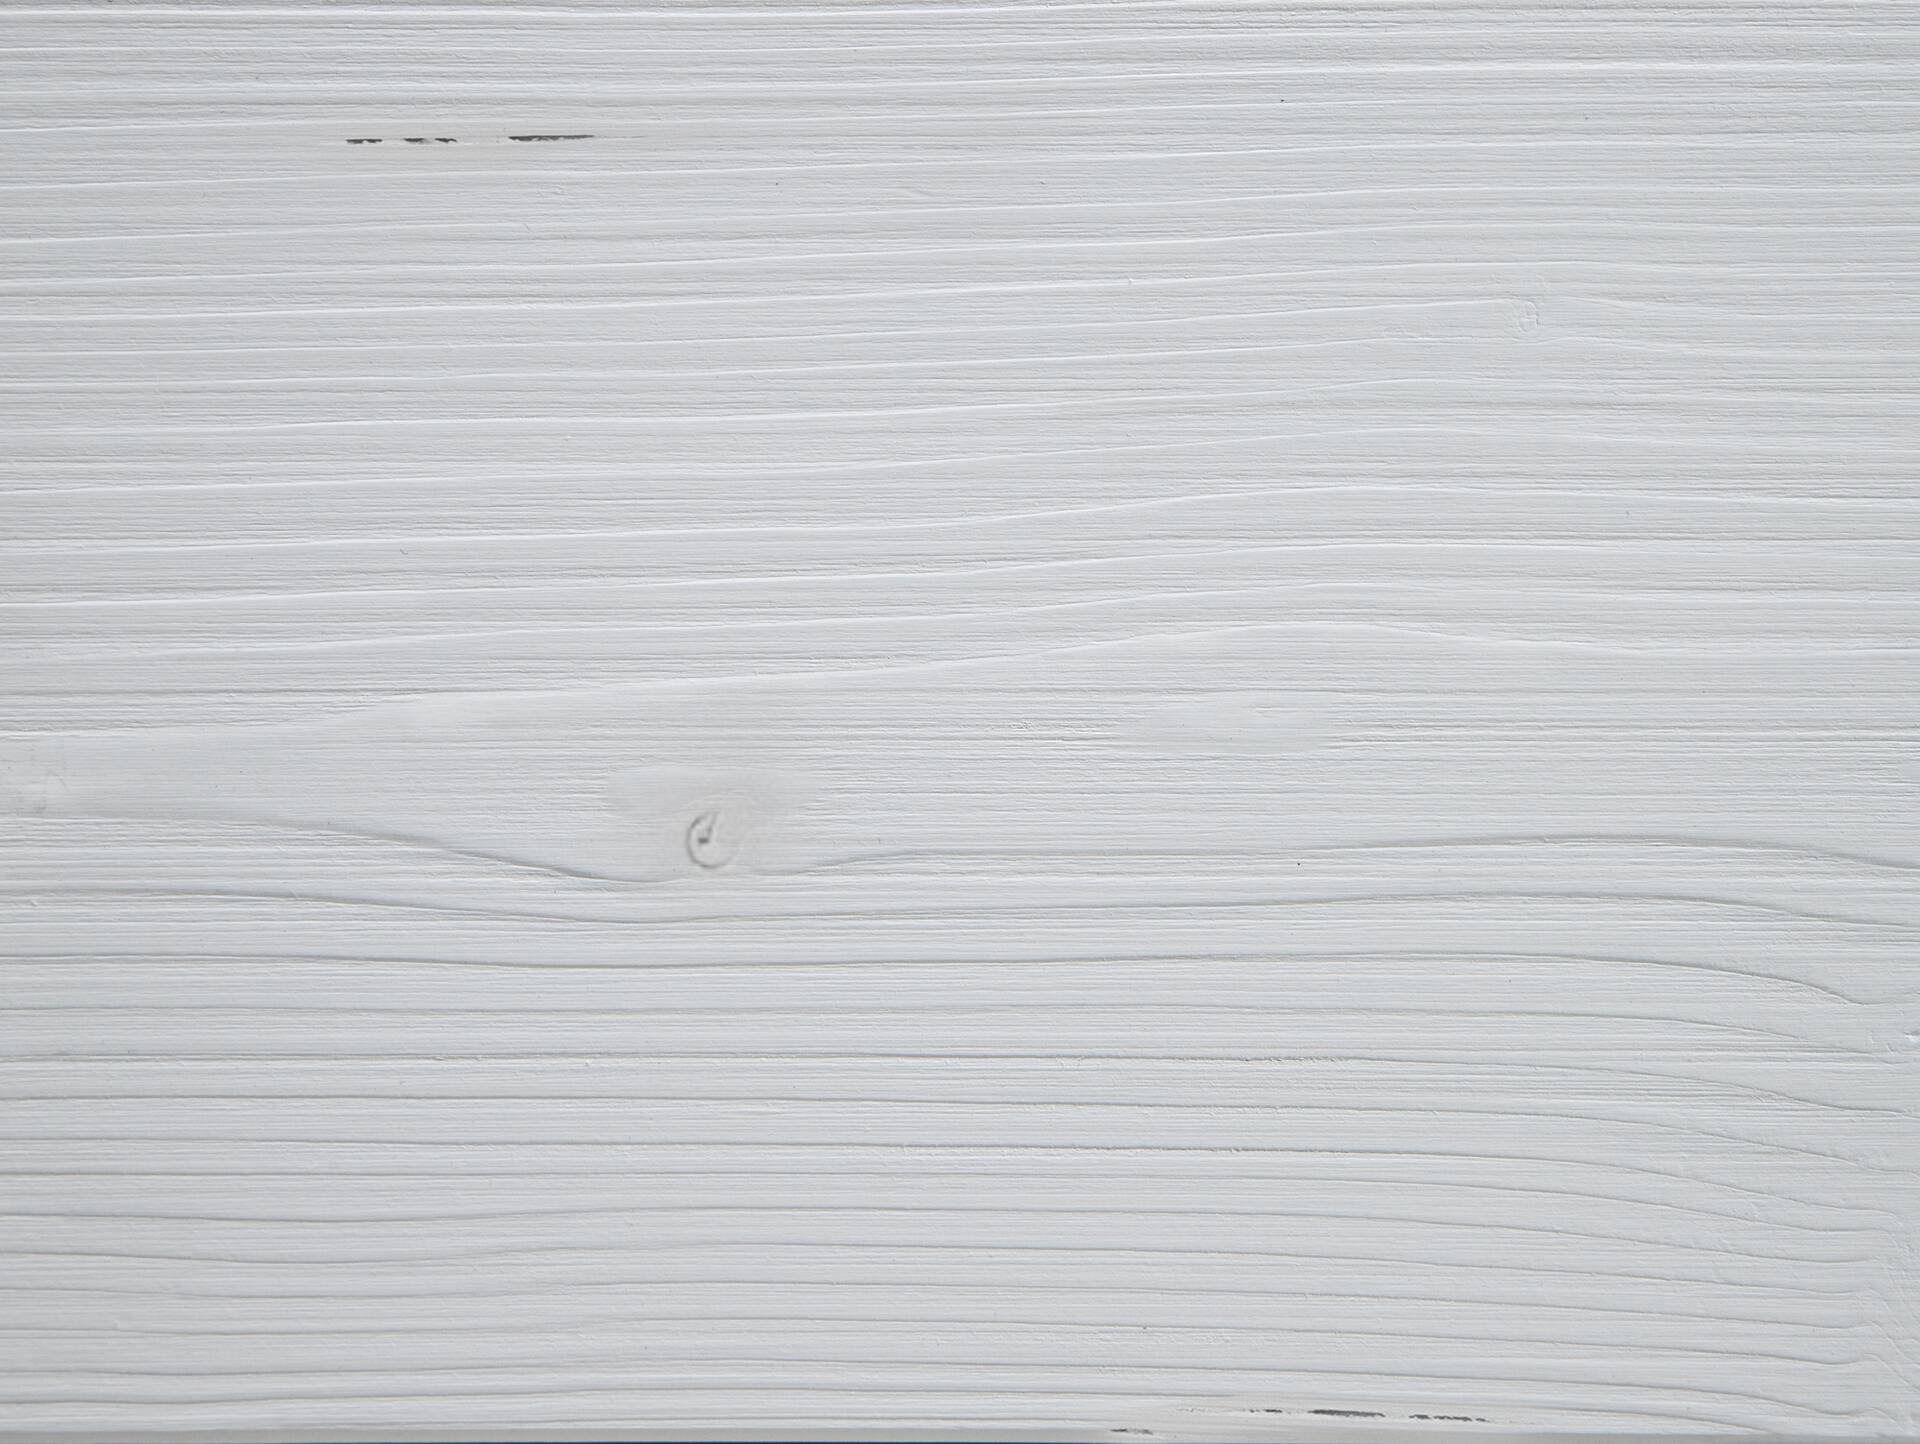 LUKY Kufenbett mit Polsterkopfteil, Material Massivholz, Fichte massiv, Kufen schwarz 140 x 220 cm | weiss | Kunstleder Braun